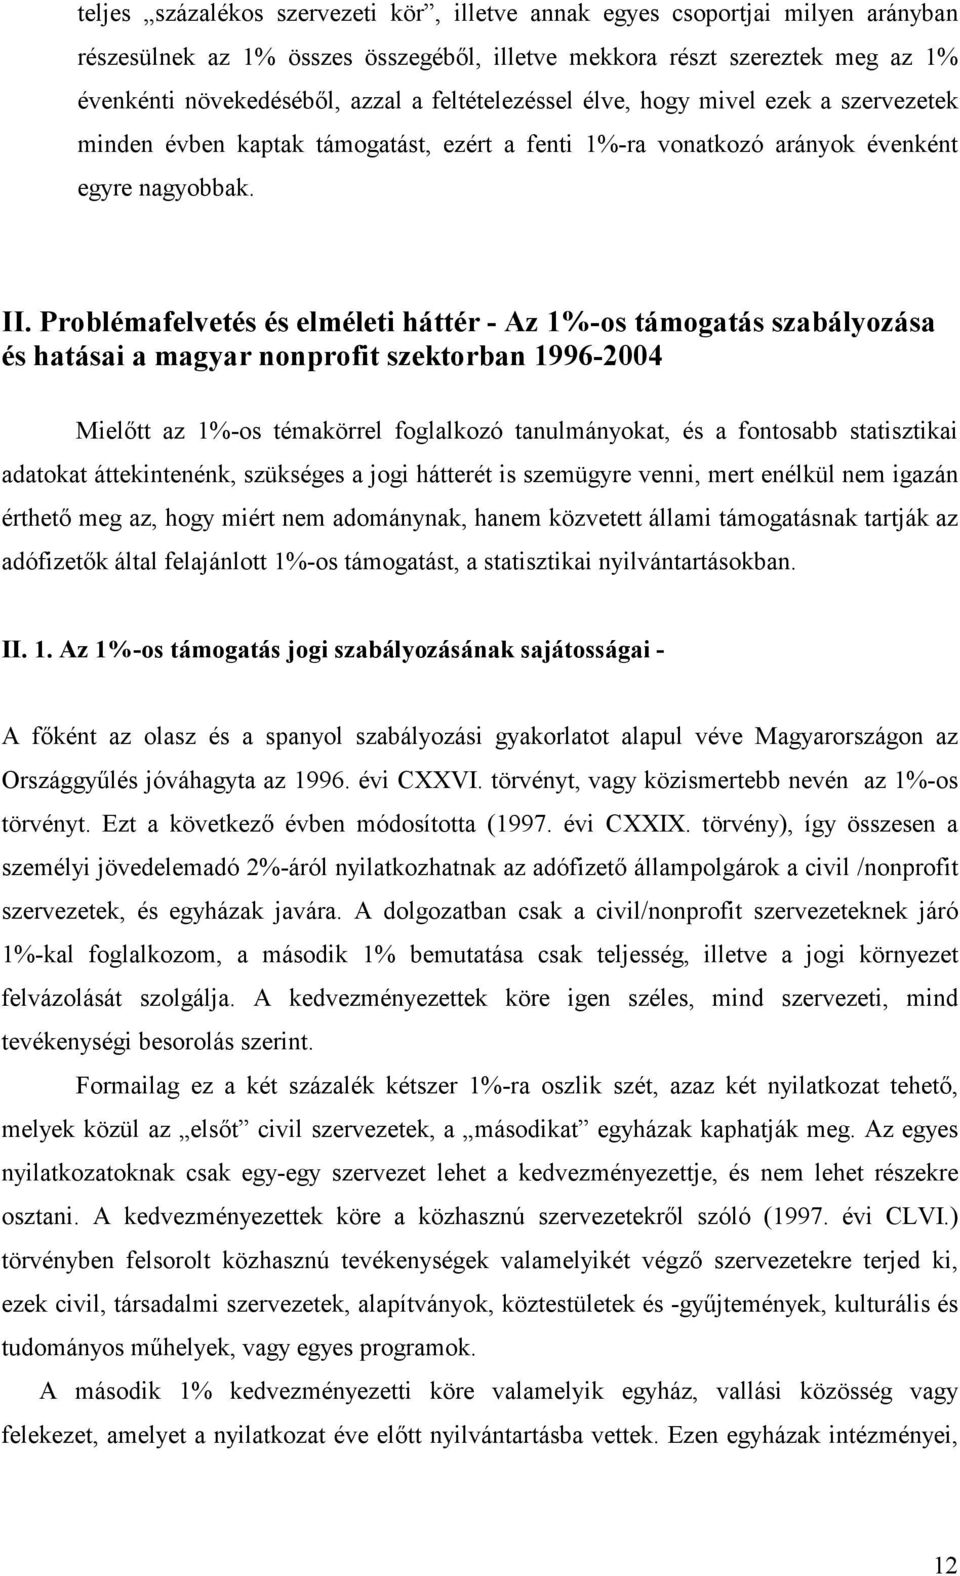 Problémafelvetés és elméleti háttér - Az 1%-os támogatás szabályozása és hatásai a magyar nonprofit szektorban 1996-2004 Mielıtt az 1%-os témakörrel foglalkozó tanulmányokat, és a fontosabb